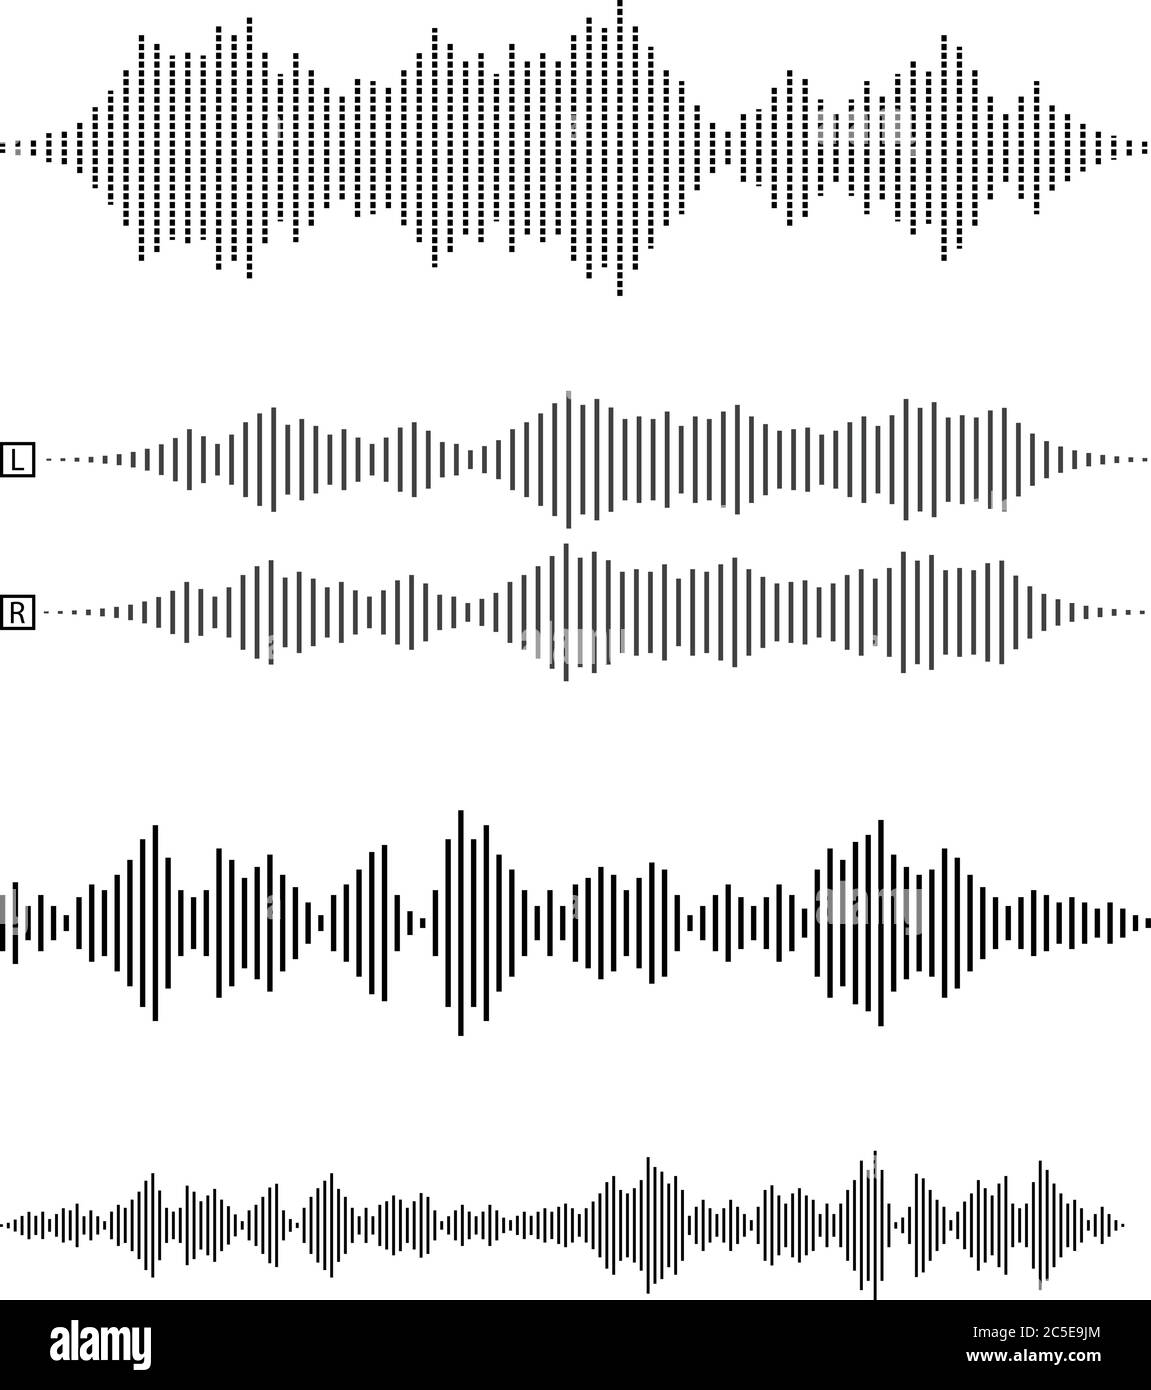 Satz von Audio-Kurven oder Schallwellen, sprach-, Rauschen oder Musik Symbol Vektor-Illustration Stock Vektor